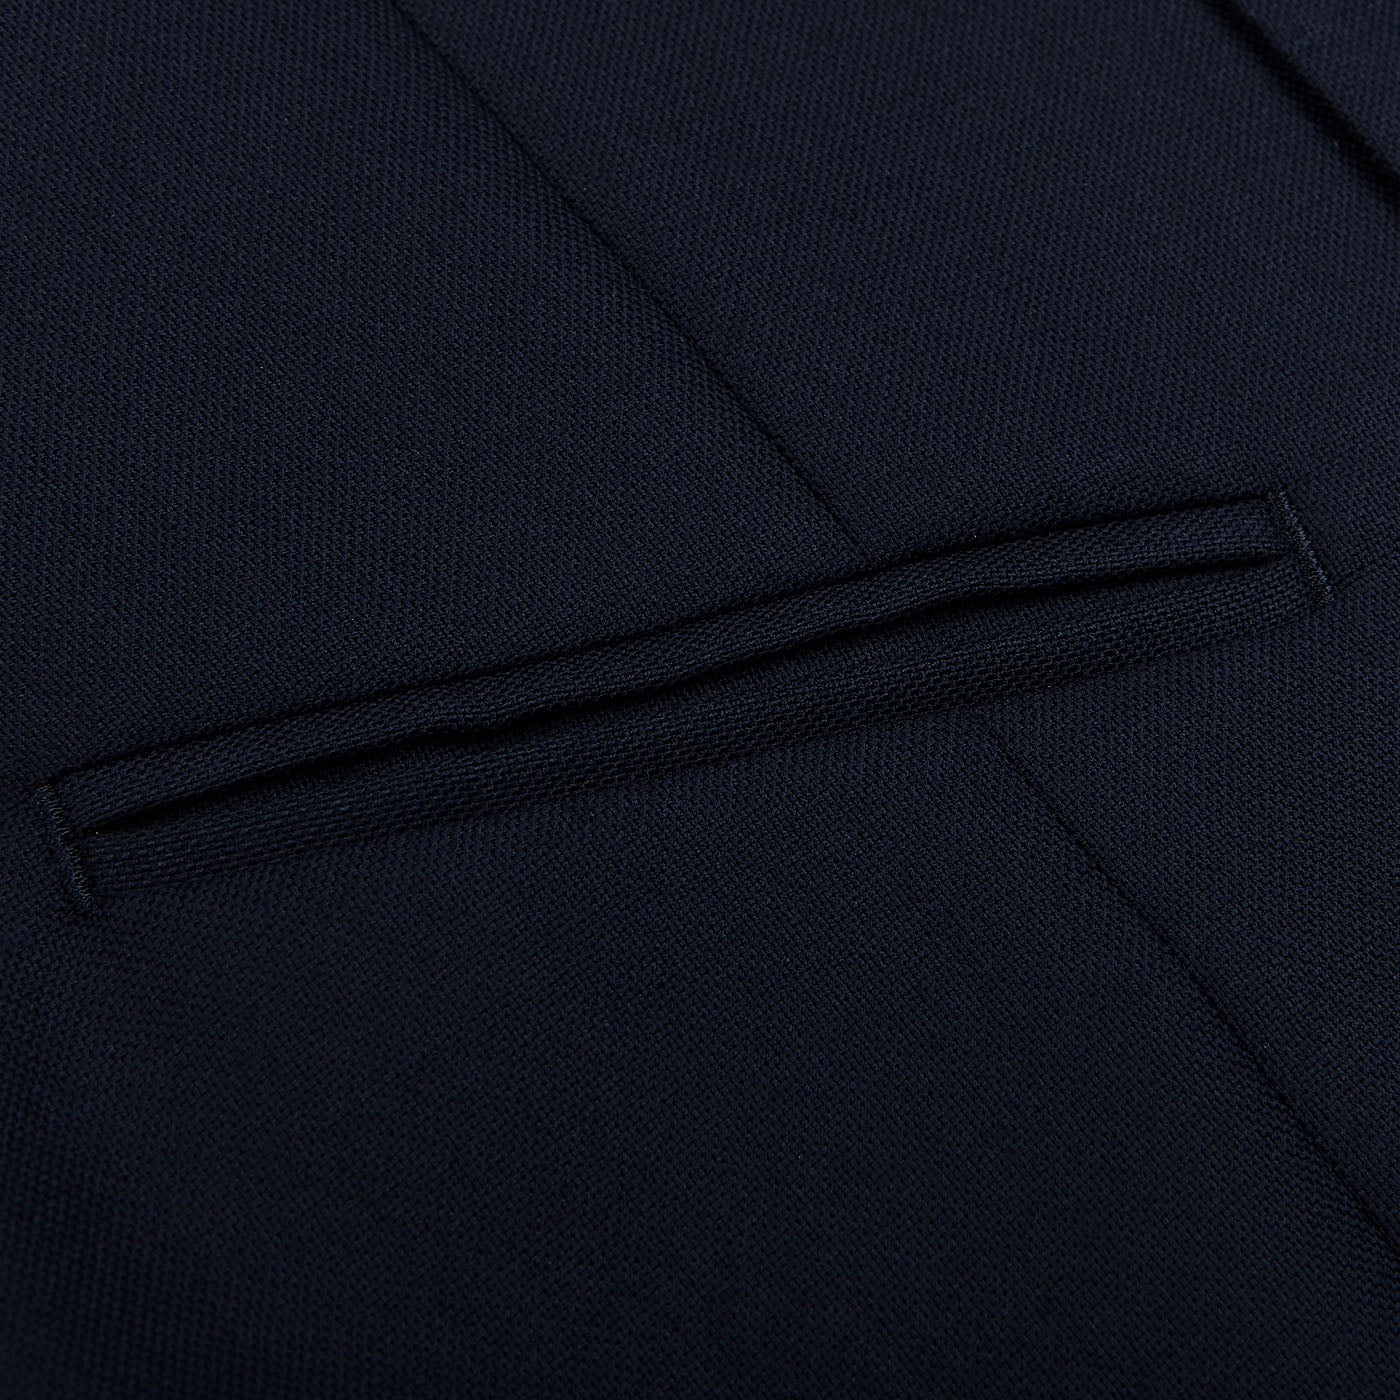 Baltzar Sartorial Navy Super 100s Wool DB Waistcoat Pocket